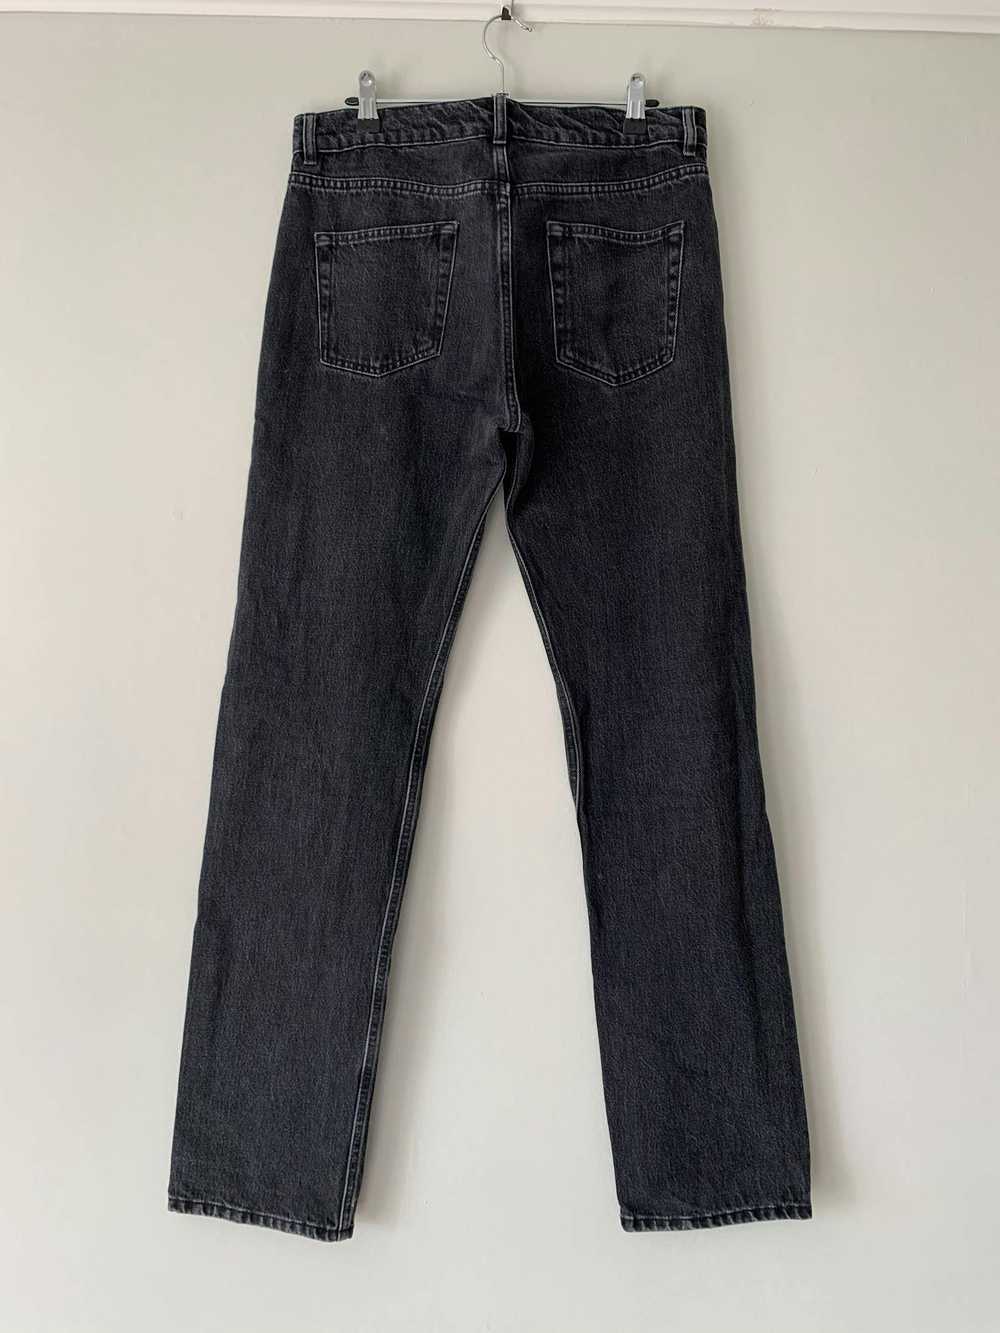 Balenciaga SS18 Washed Grey Jeans - image 5